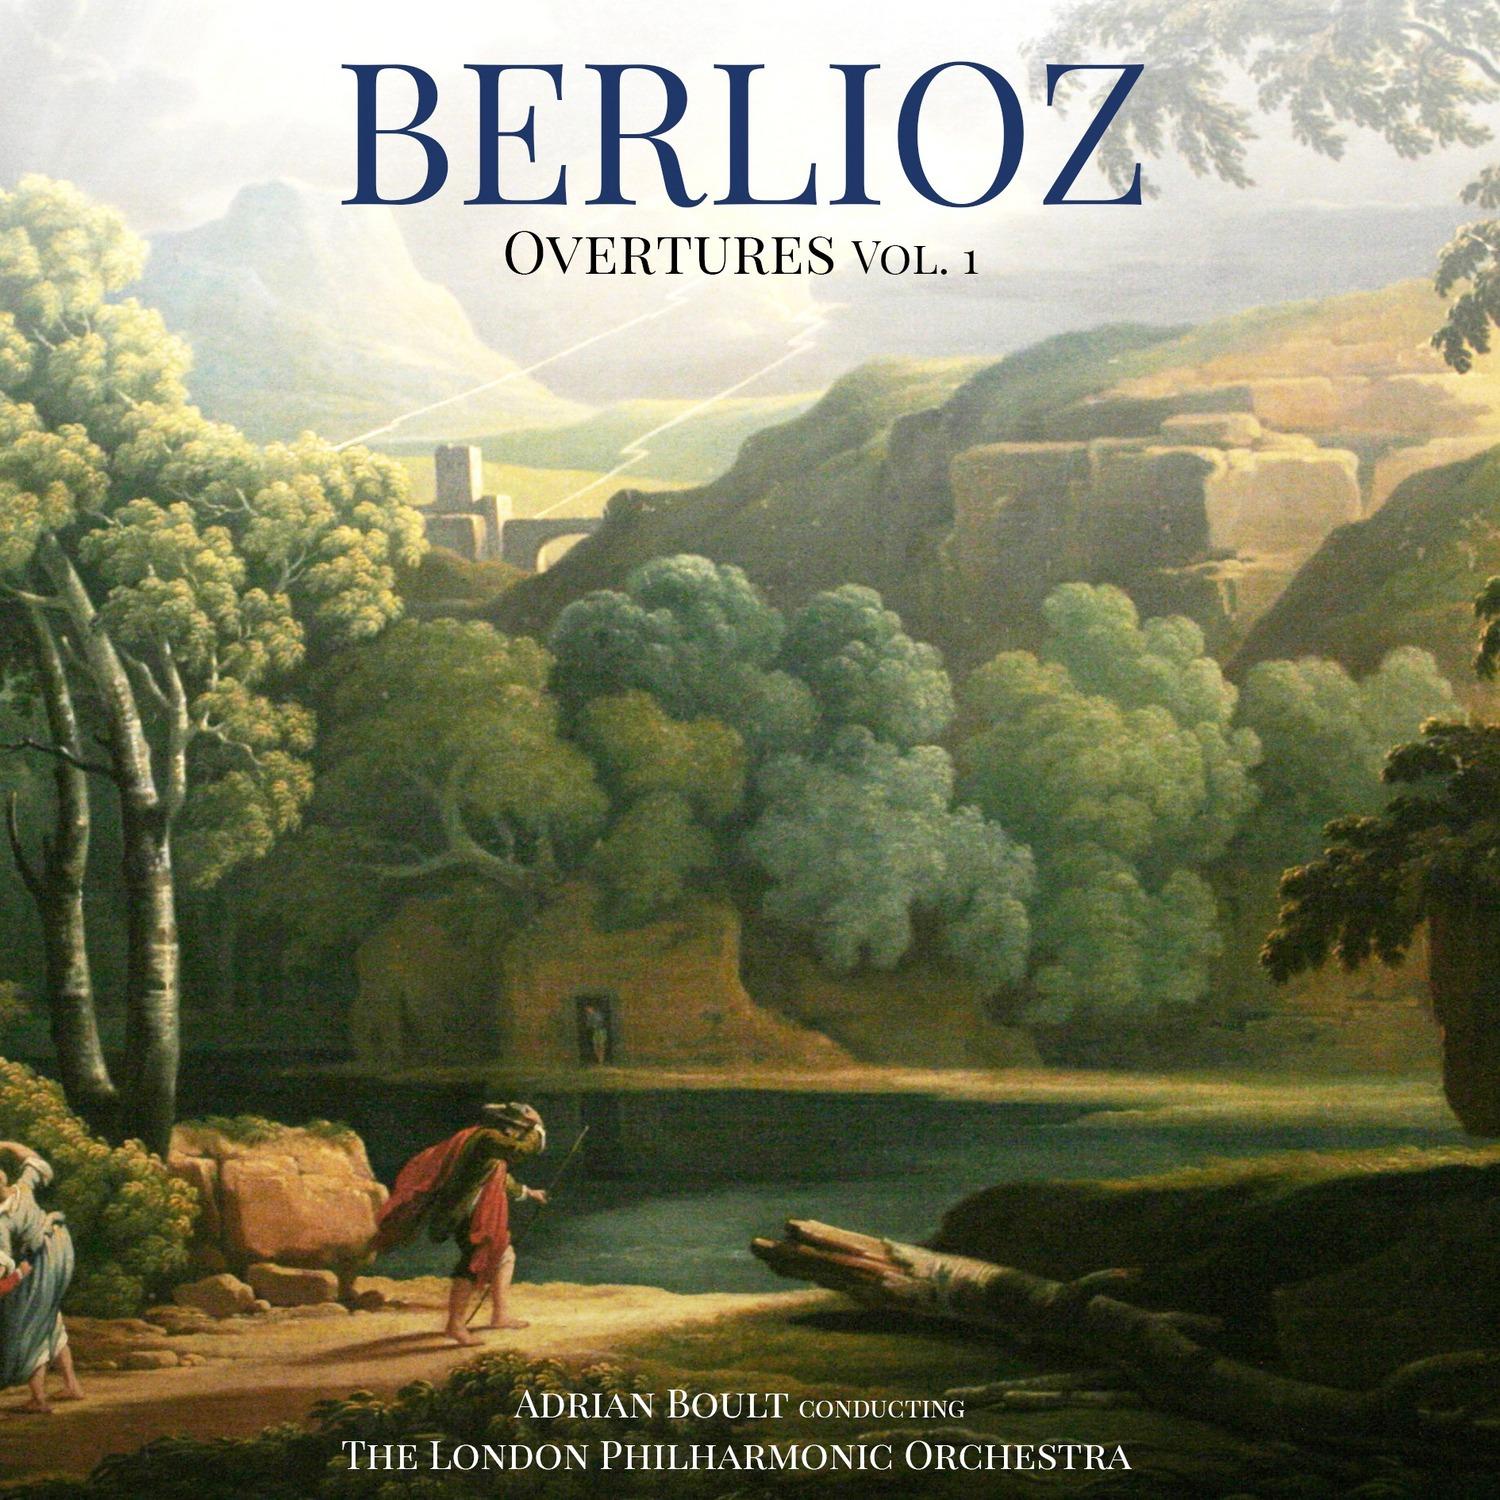 Berlioz Overtures Vol. 1